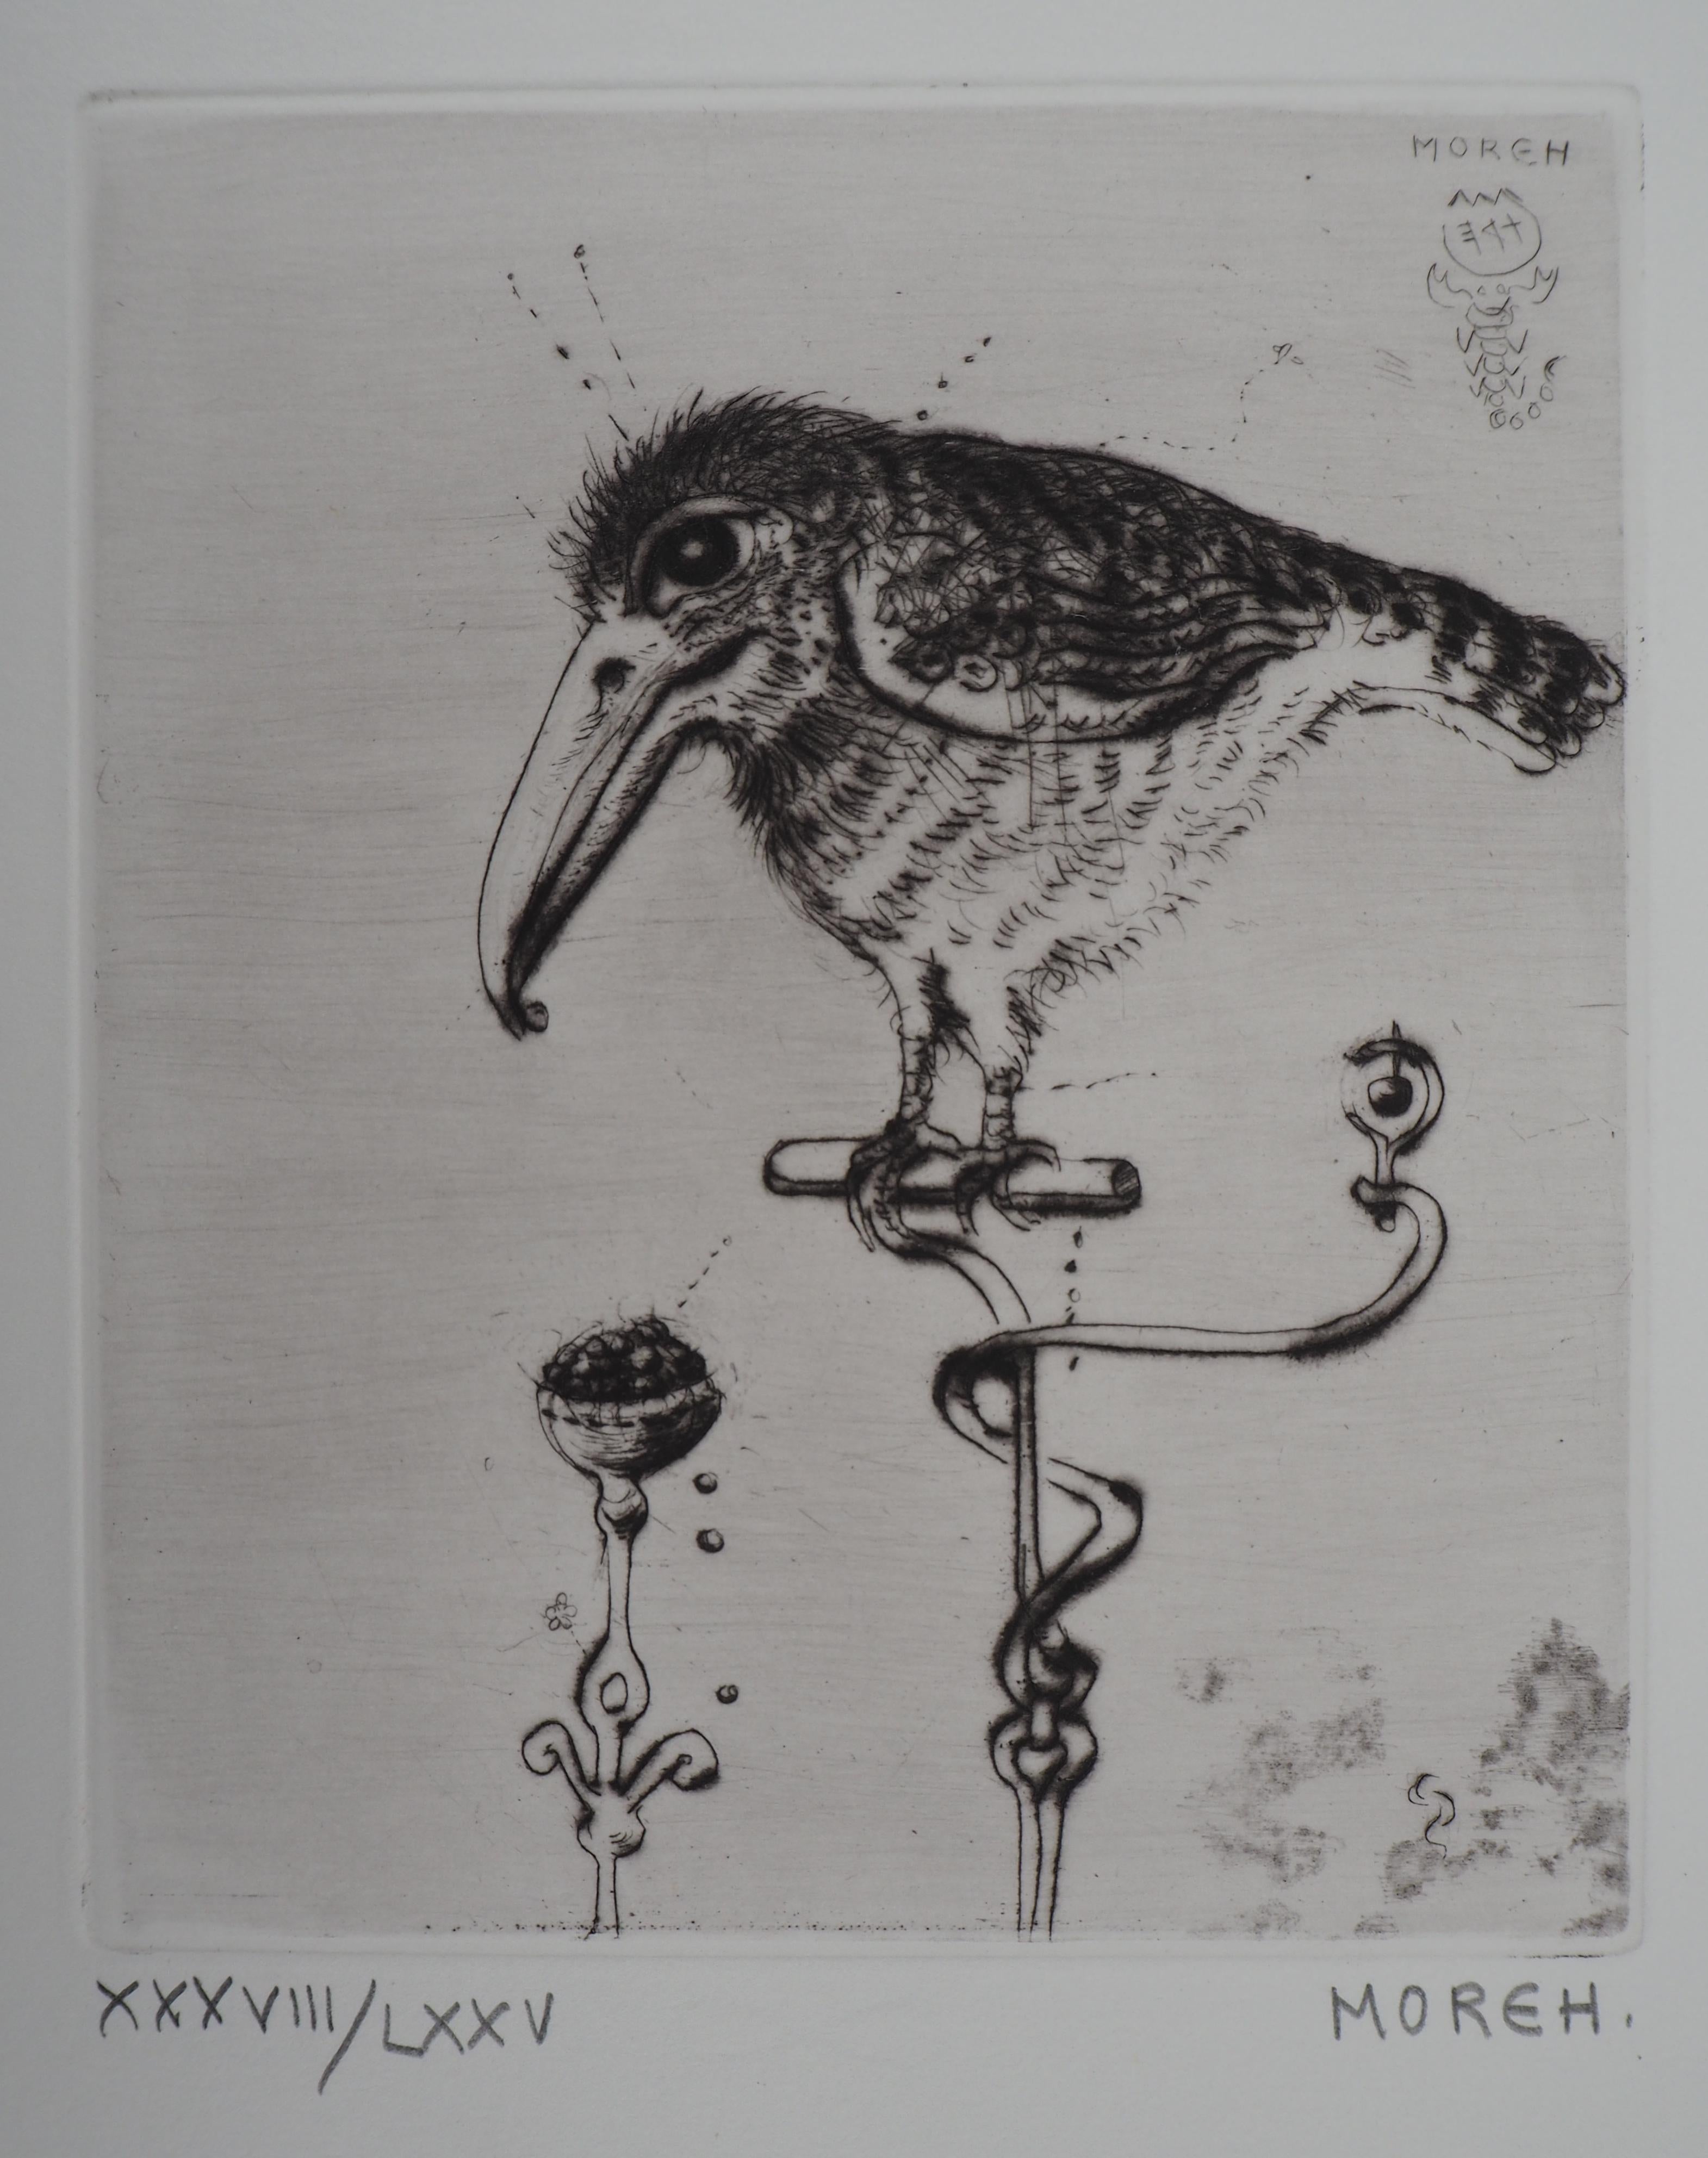 The Little Bird, gravure originale signée à la main, édition limitée à 75 exemplaires - Print de Mordecai Moreh